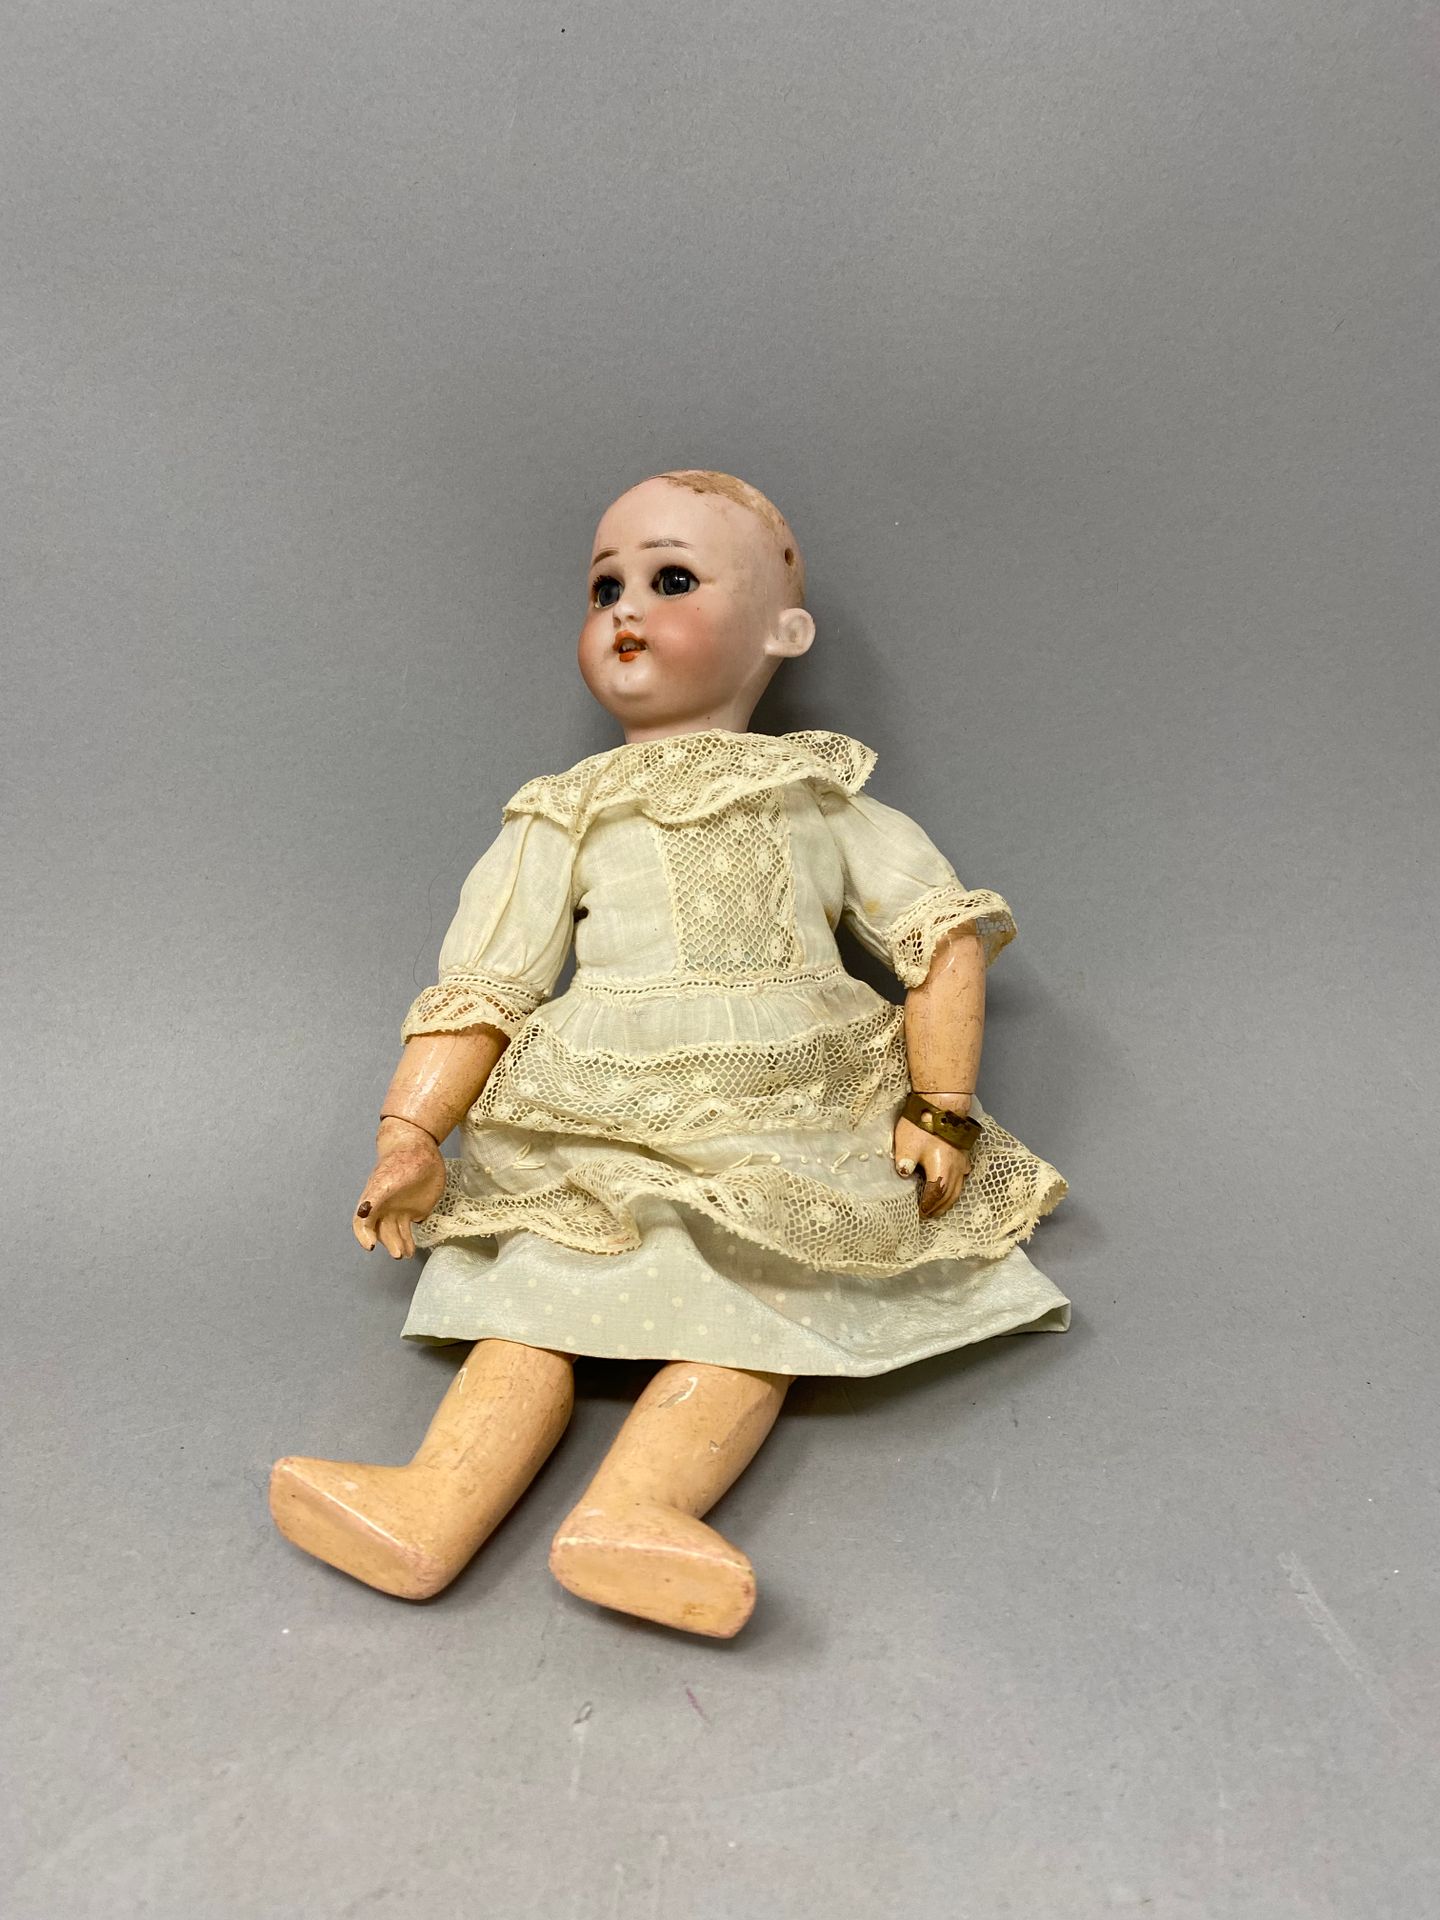 Null 法国小娃娃，头部为仿制的Simon et Halbig，损坏的蓝色睡眼，原为铰接式身体。
高：26厘米